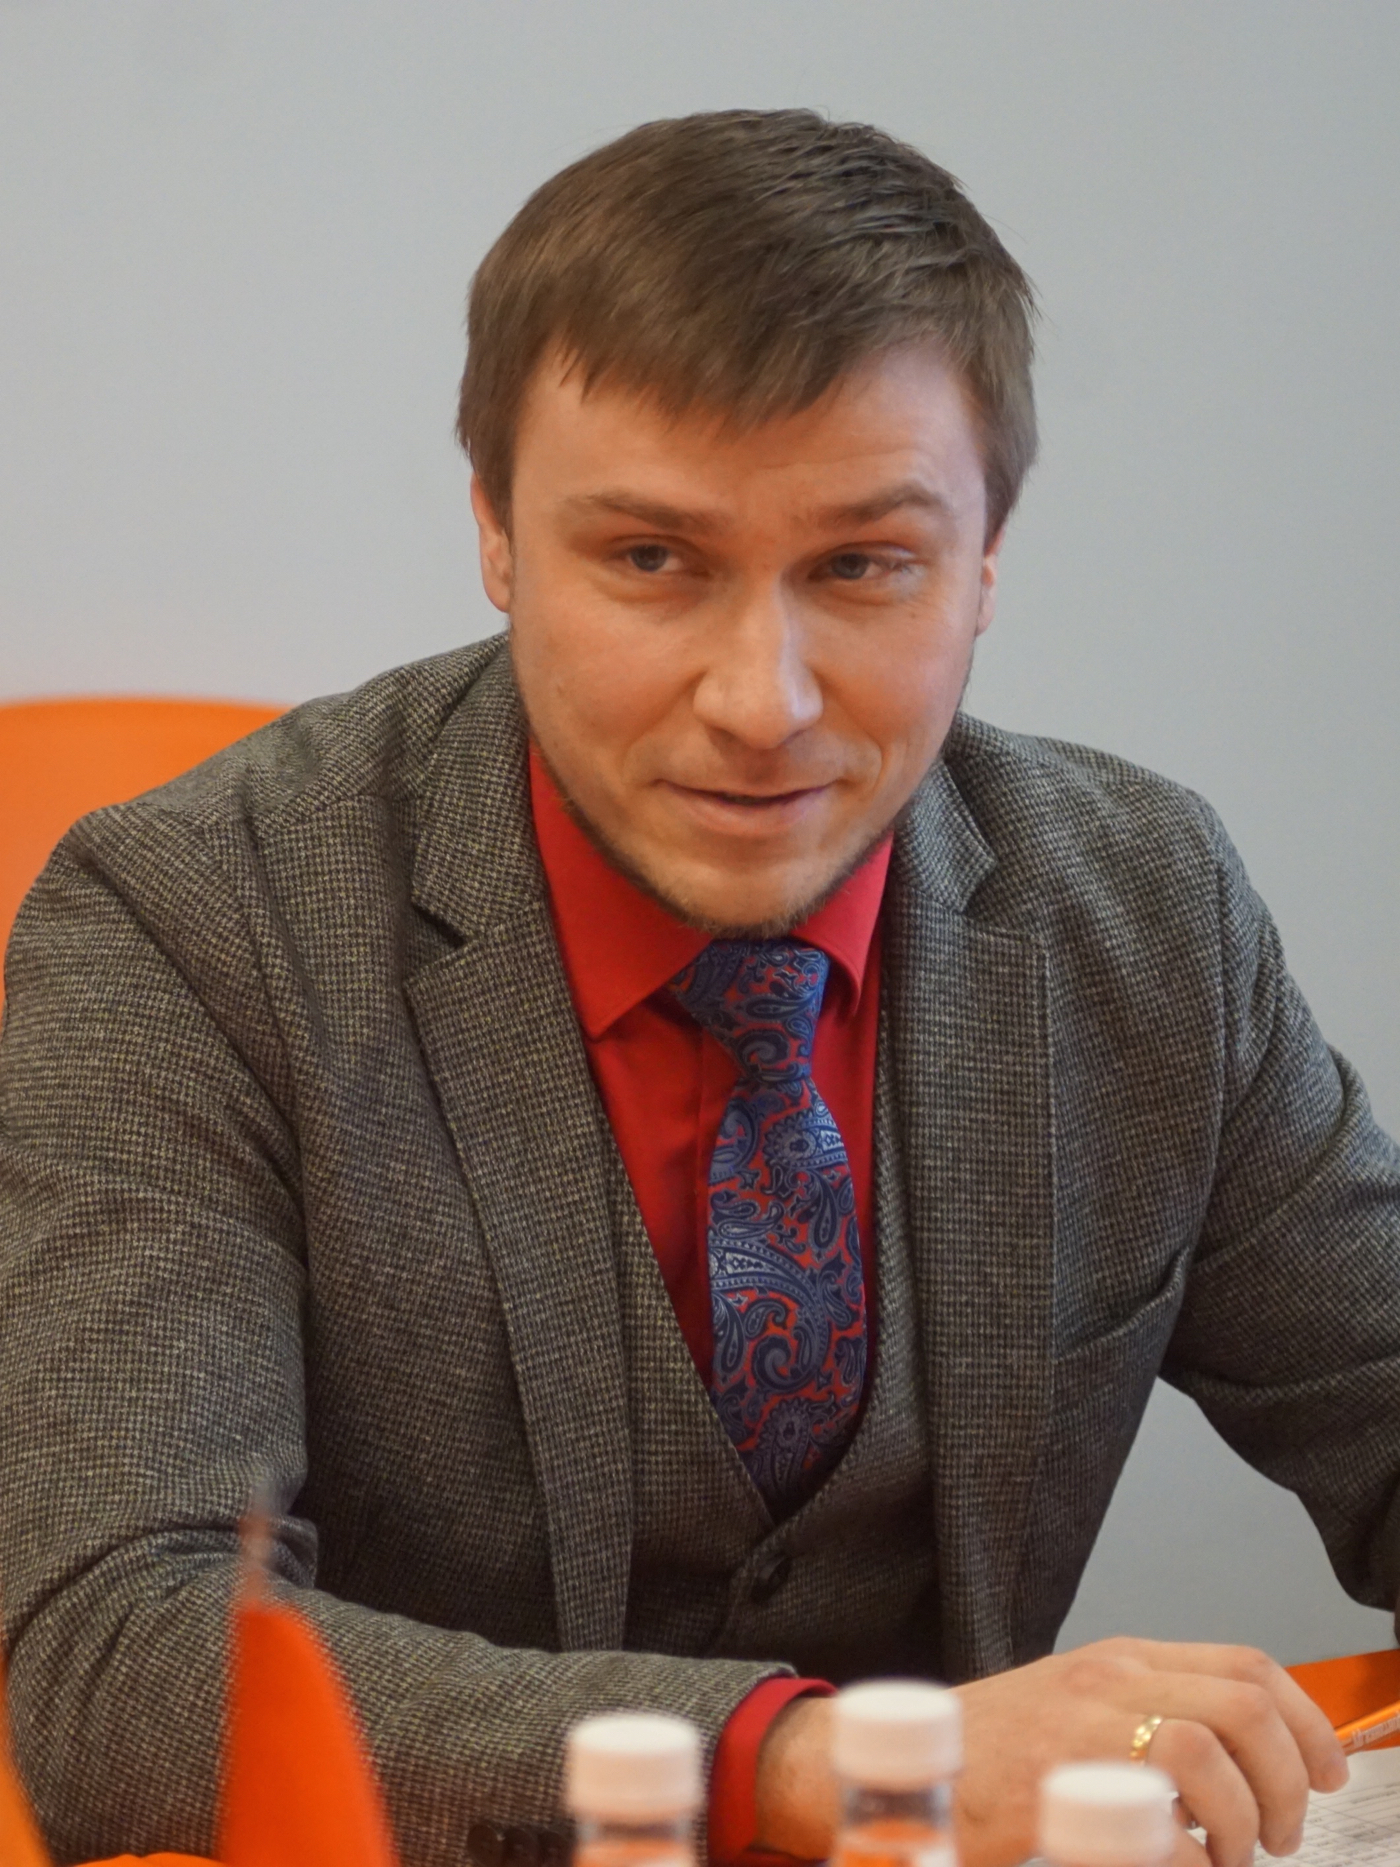 Береснев Валерий Андреевич — директор Фонда поддержки предпринимательства Ленинградской области